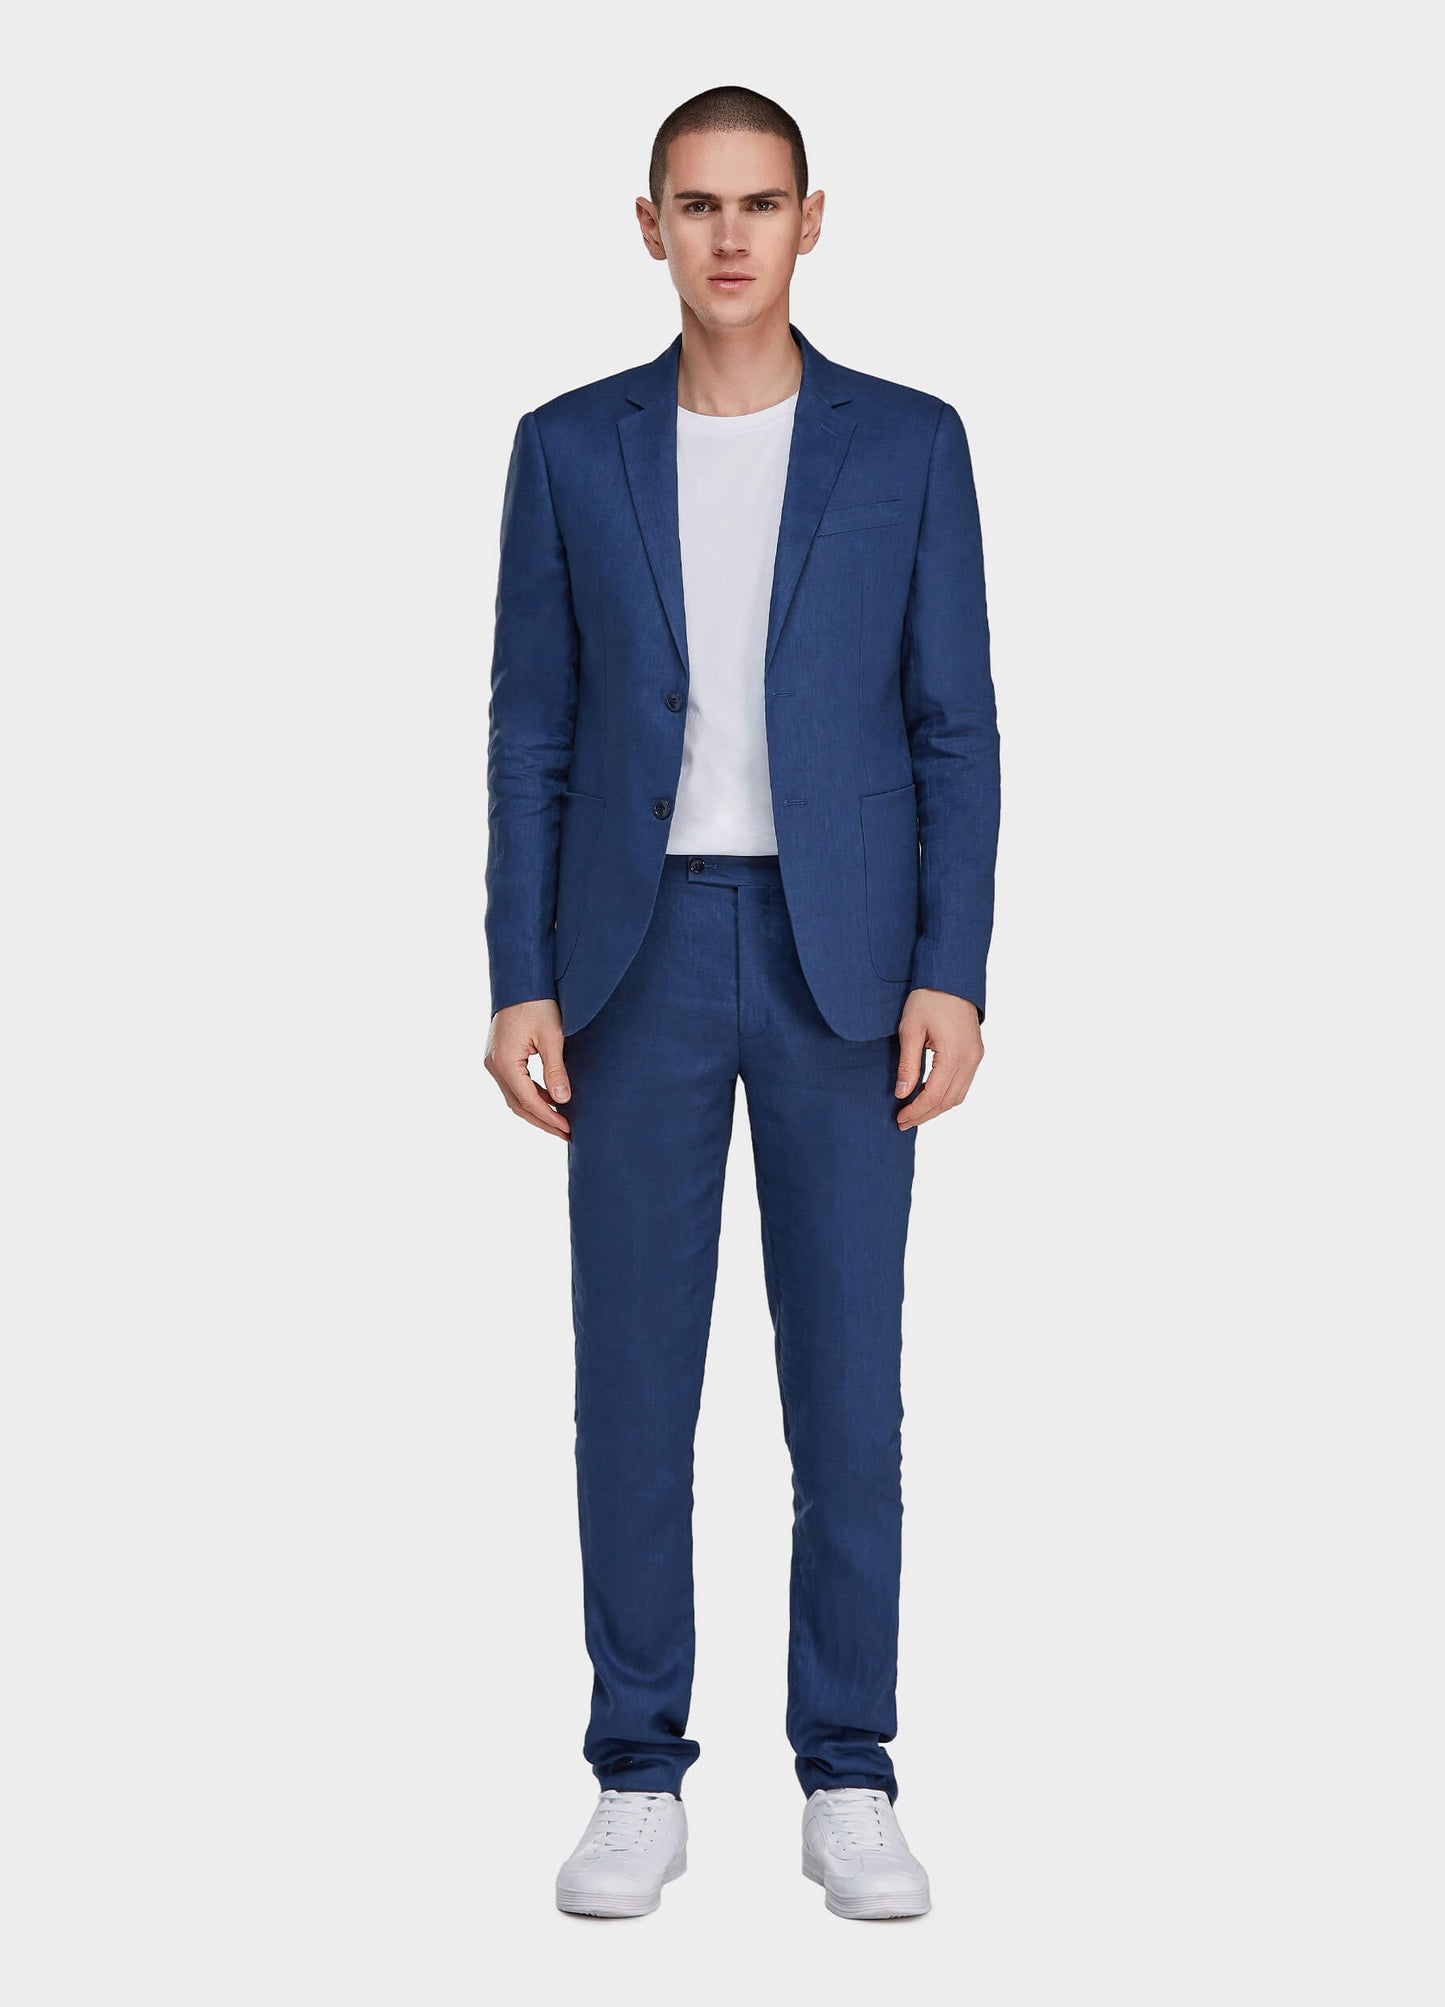 blue linen suit for men